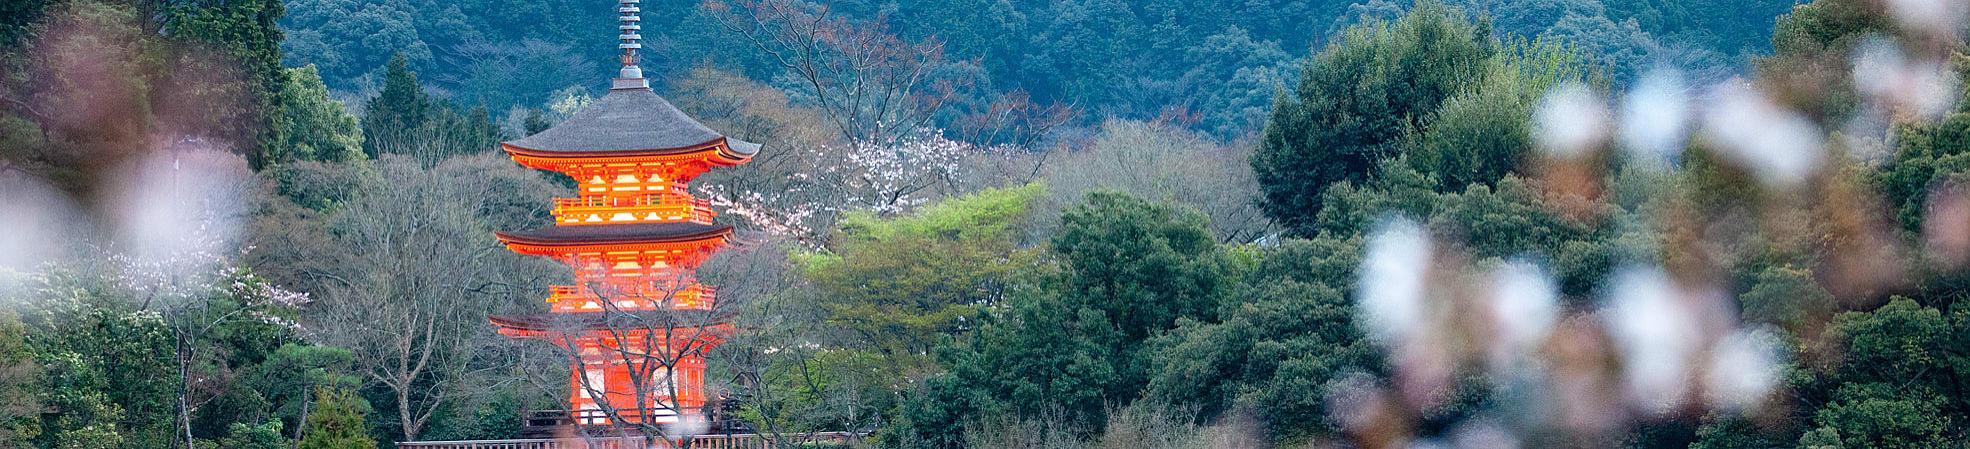 Kiyomizu-dera with Cherry Blossom